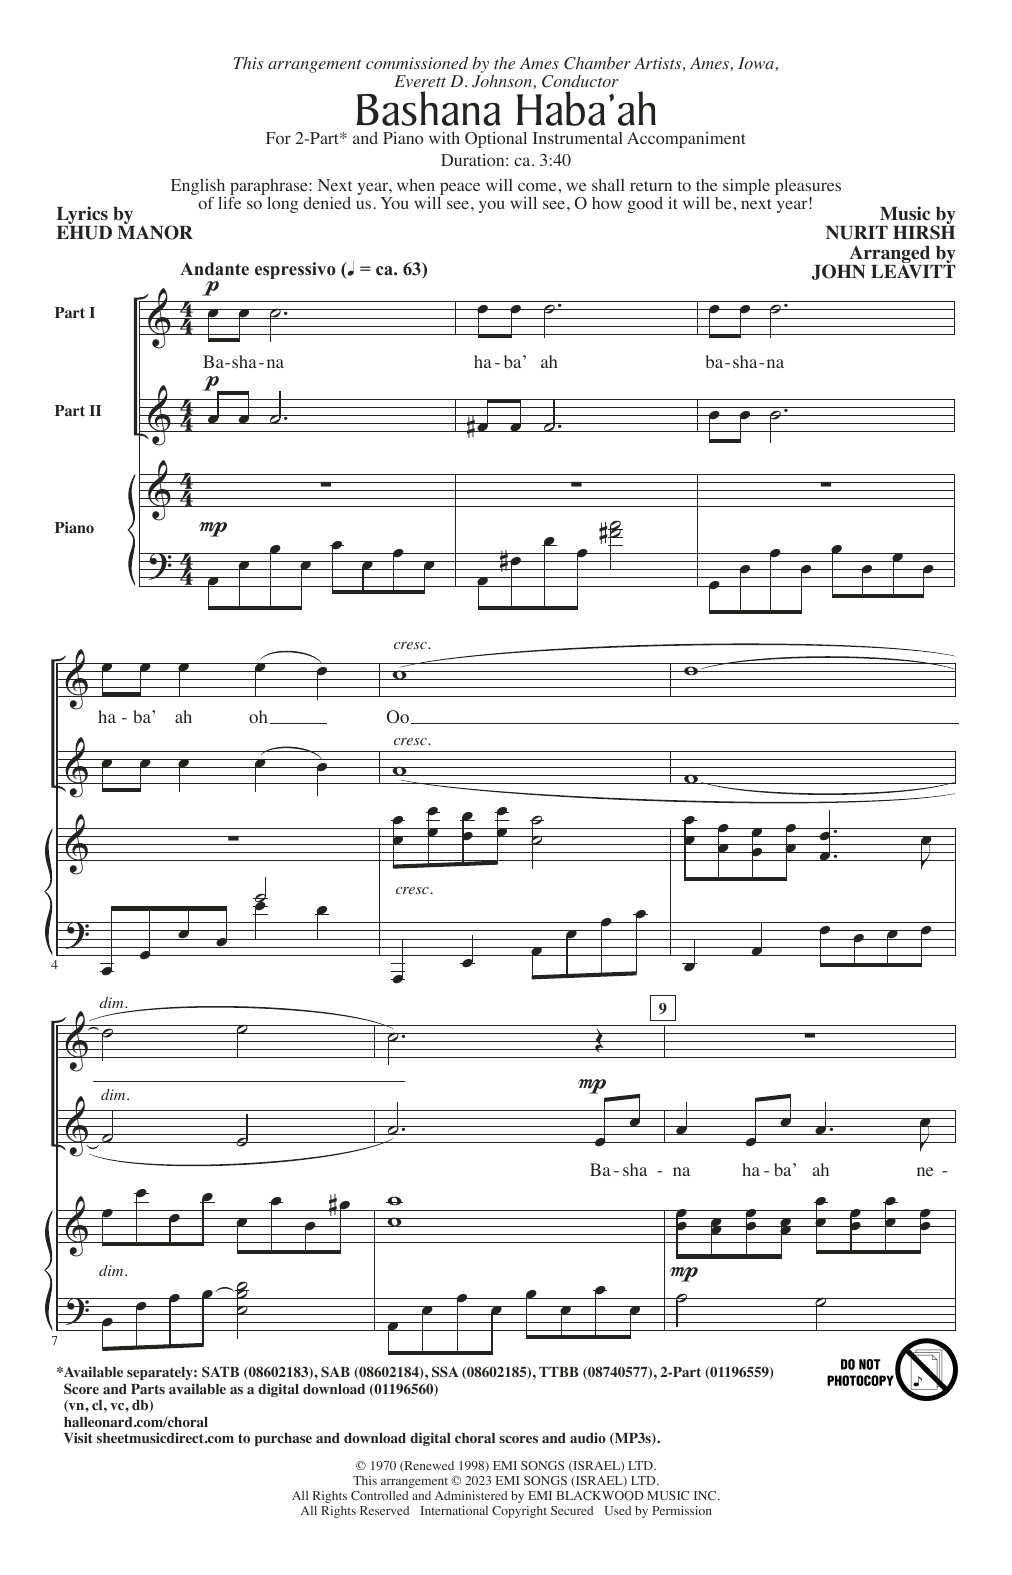 Nurit Hirsh Bashana Haba'ah (arr. John Leavitt) Sheet Music Notes & Chords for SAB Choir - Download or Print PDF